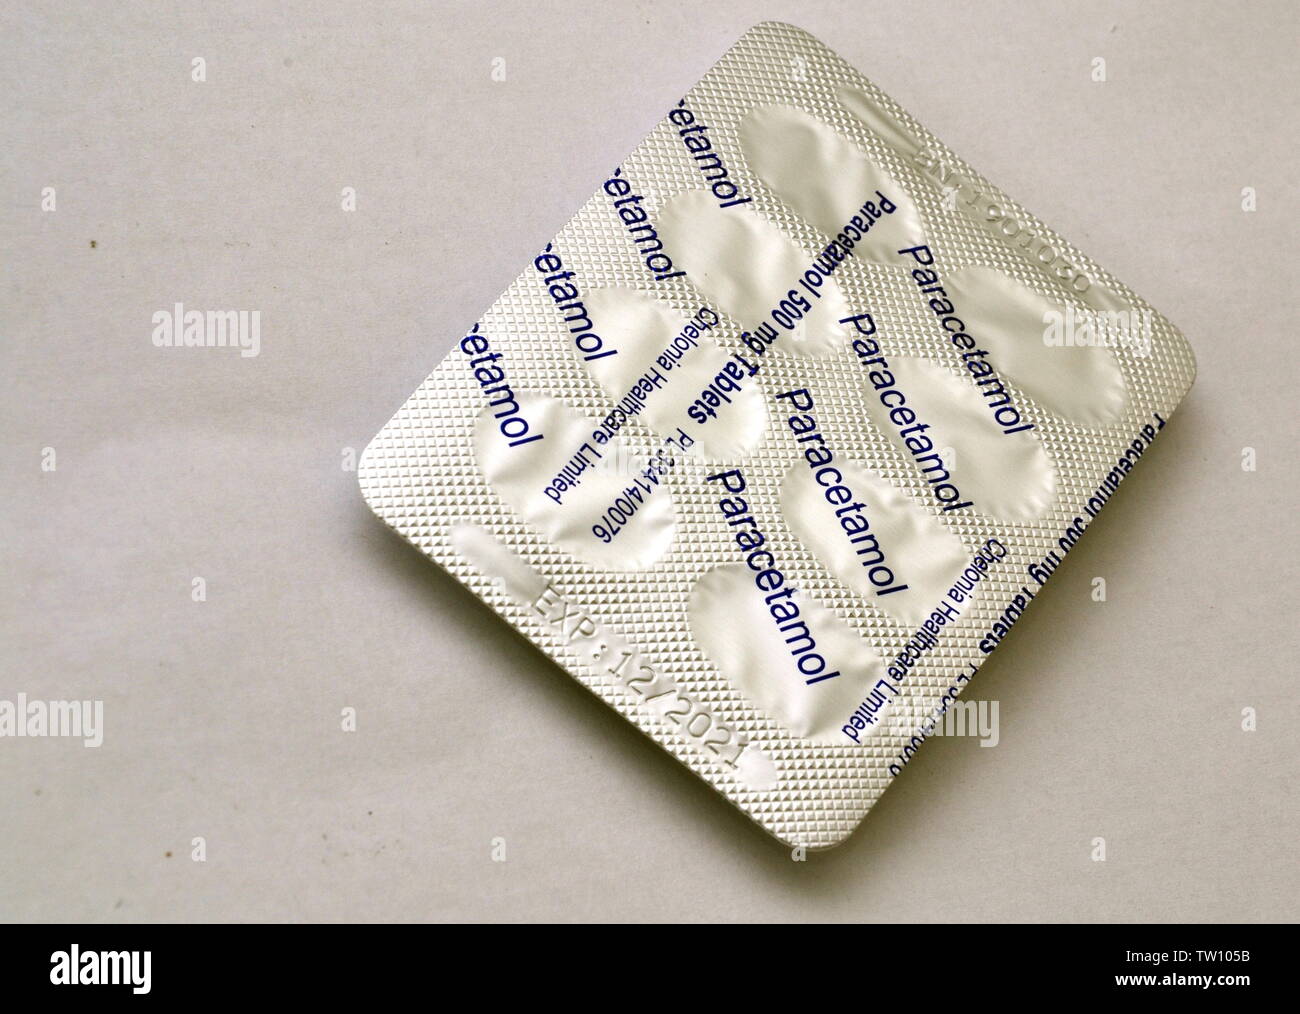 Ein Studiofoto einer Packung Paracetamol-Analgetikum, Schmerztabletten, auf weißem Hintergrund Stockfoto